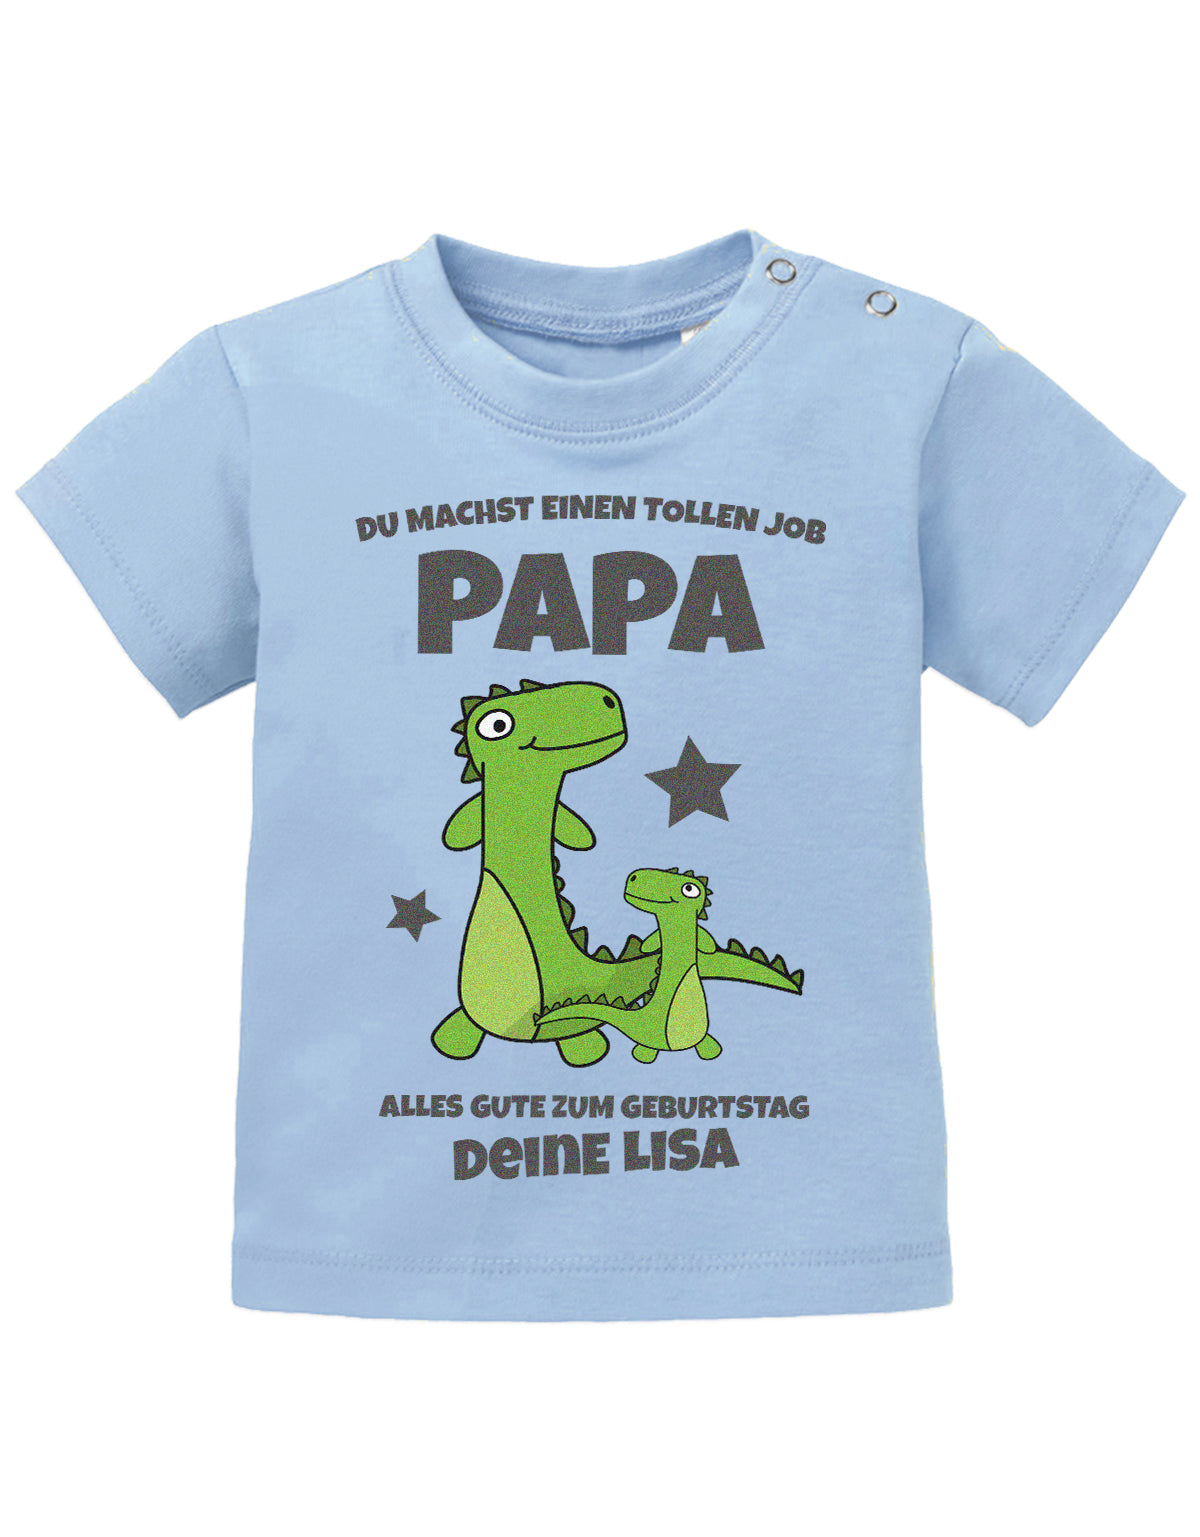 Papa Spruch Baby Shirt. Du machst einen tollen Job, Papa. Alles Gute zum Geburtstag. Personalisiert mit Namen. Hellblau